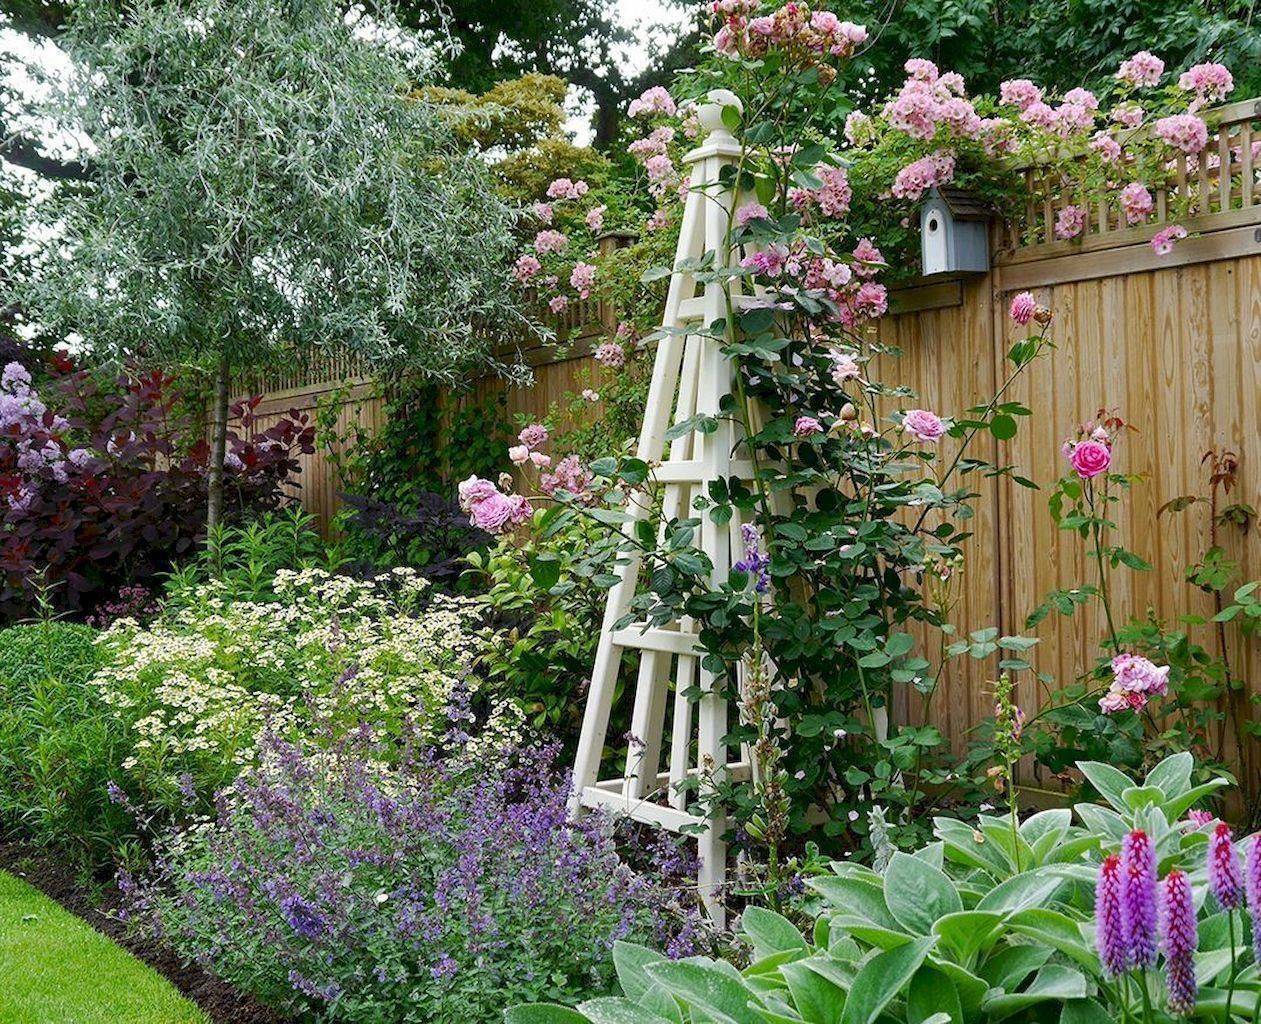 Cottage Garden Design Ideas Hgtv